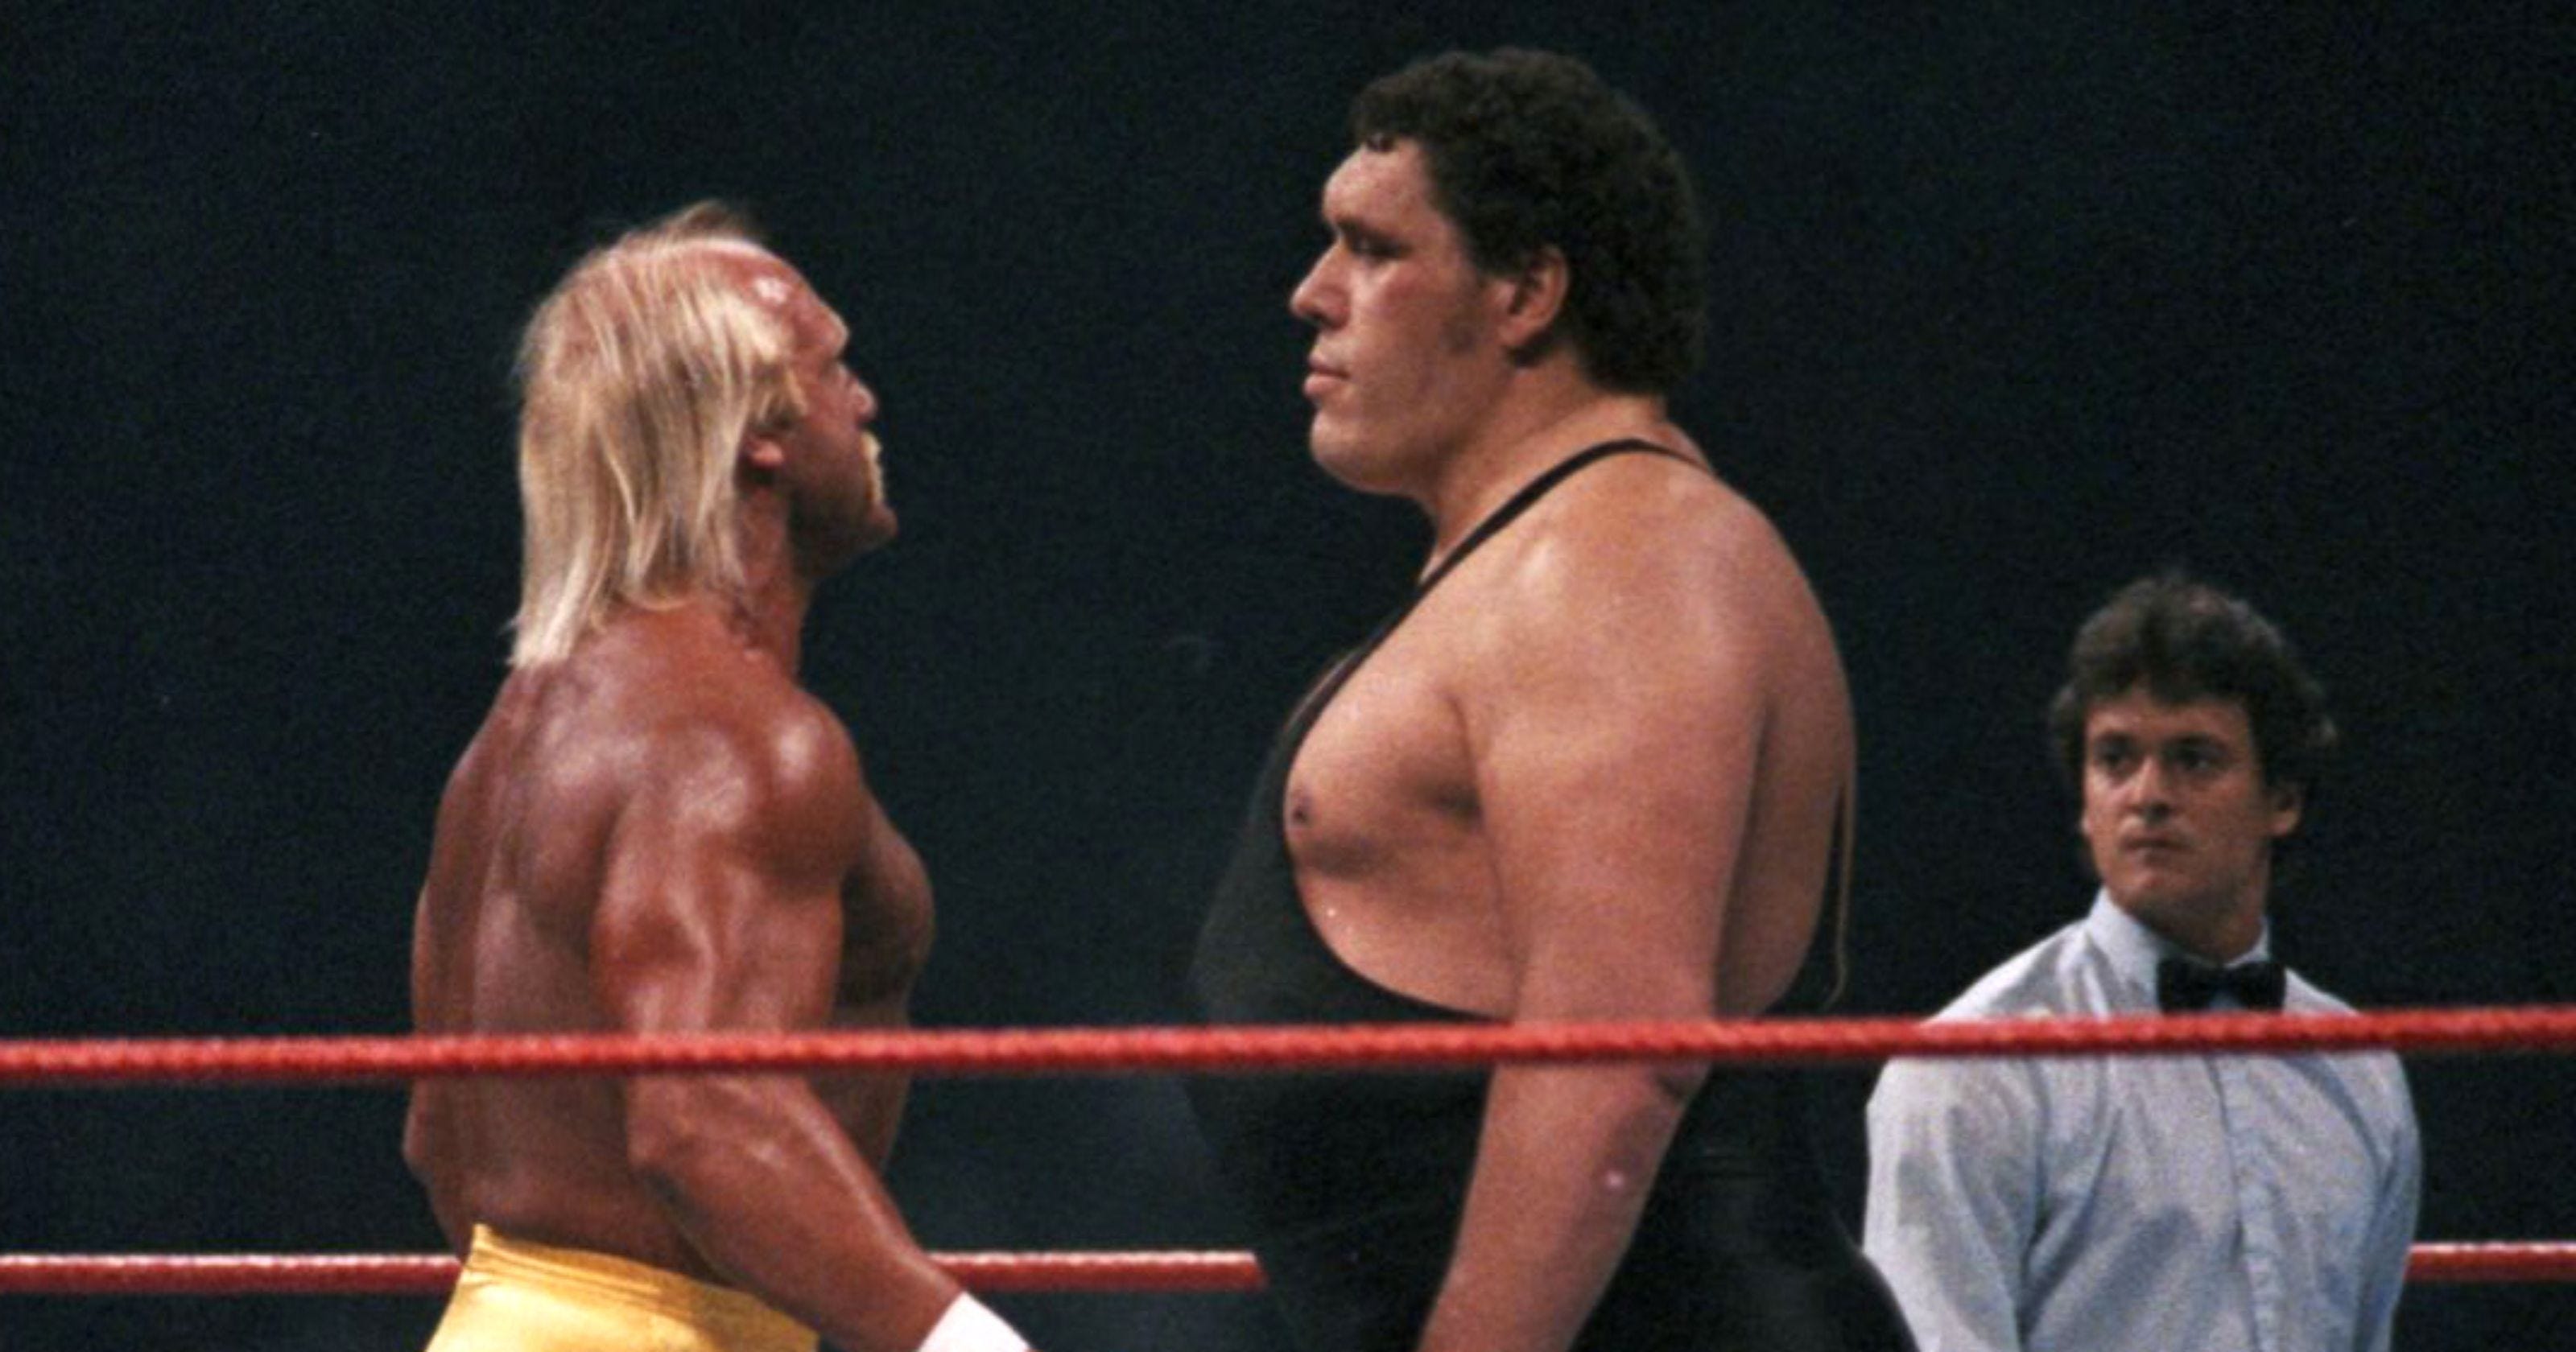 The Eras of WWF/WWE